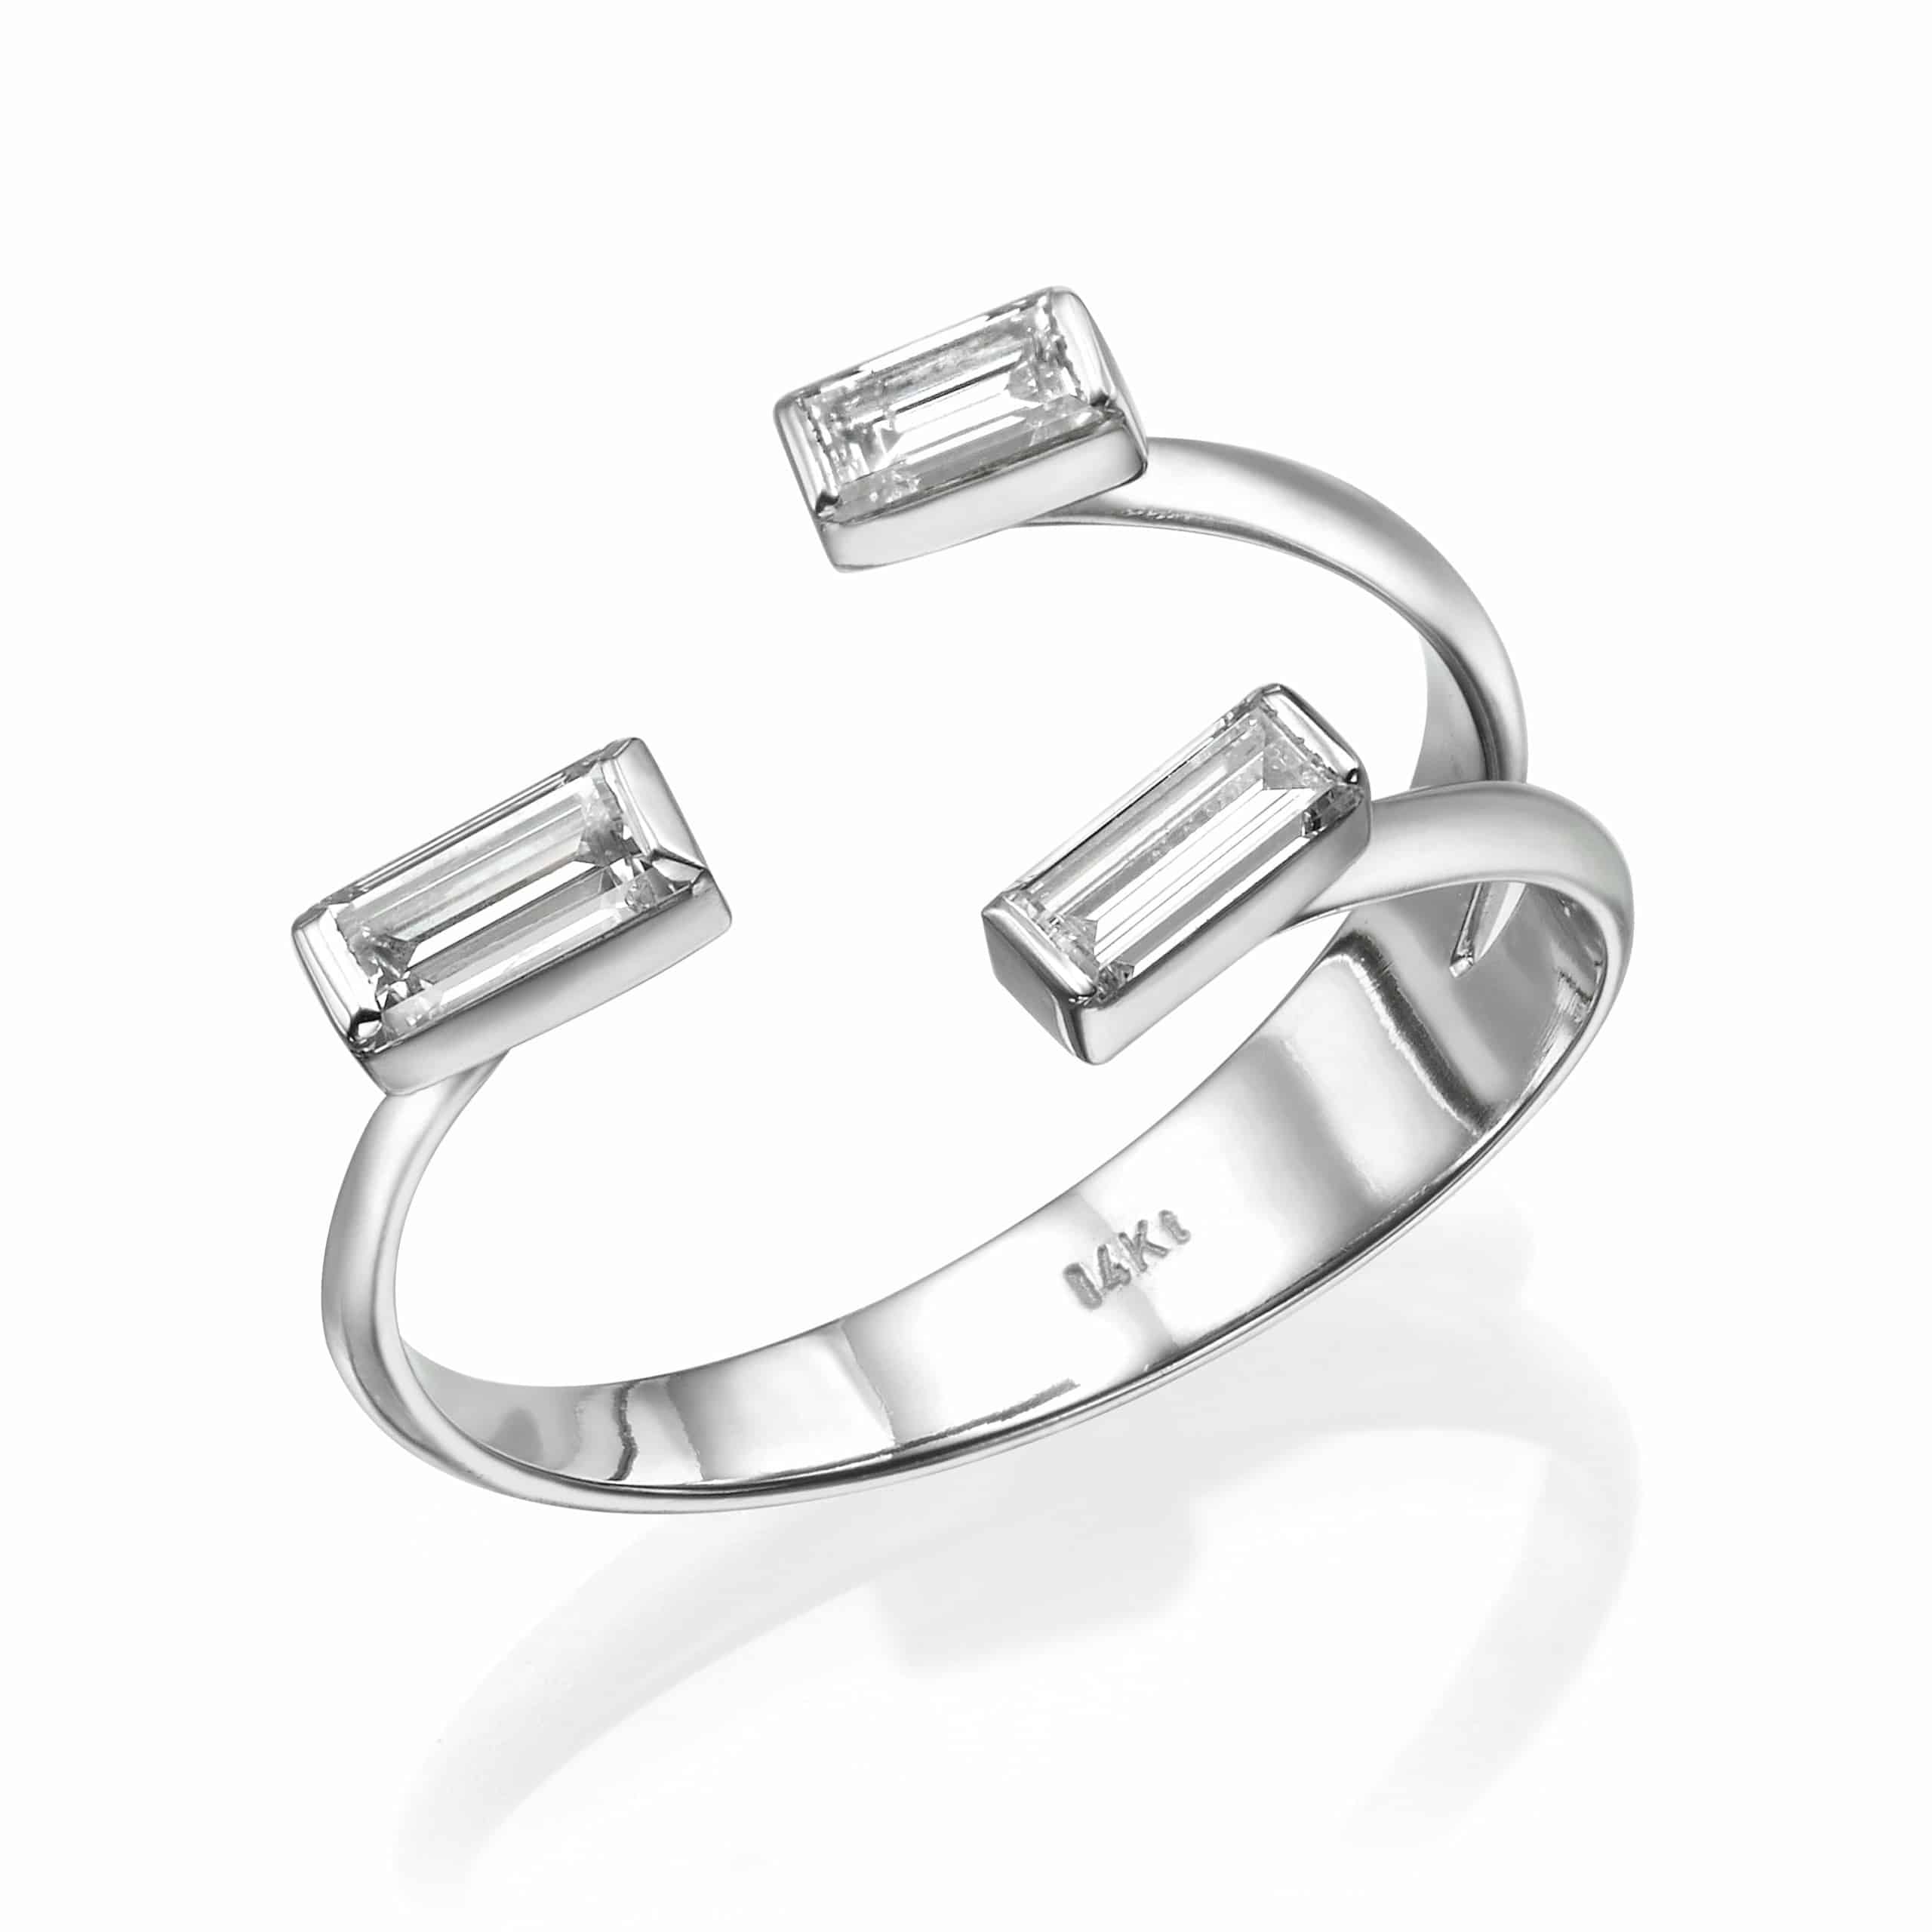 טבעת יהלומים דגם אלה בעיצוב פתוח ייחודי עם שתי אבני חן מוארכות בחיתוך בגט משובצות בכל קצה, מוצגות על רקע לבן.